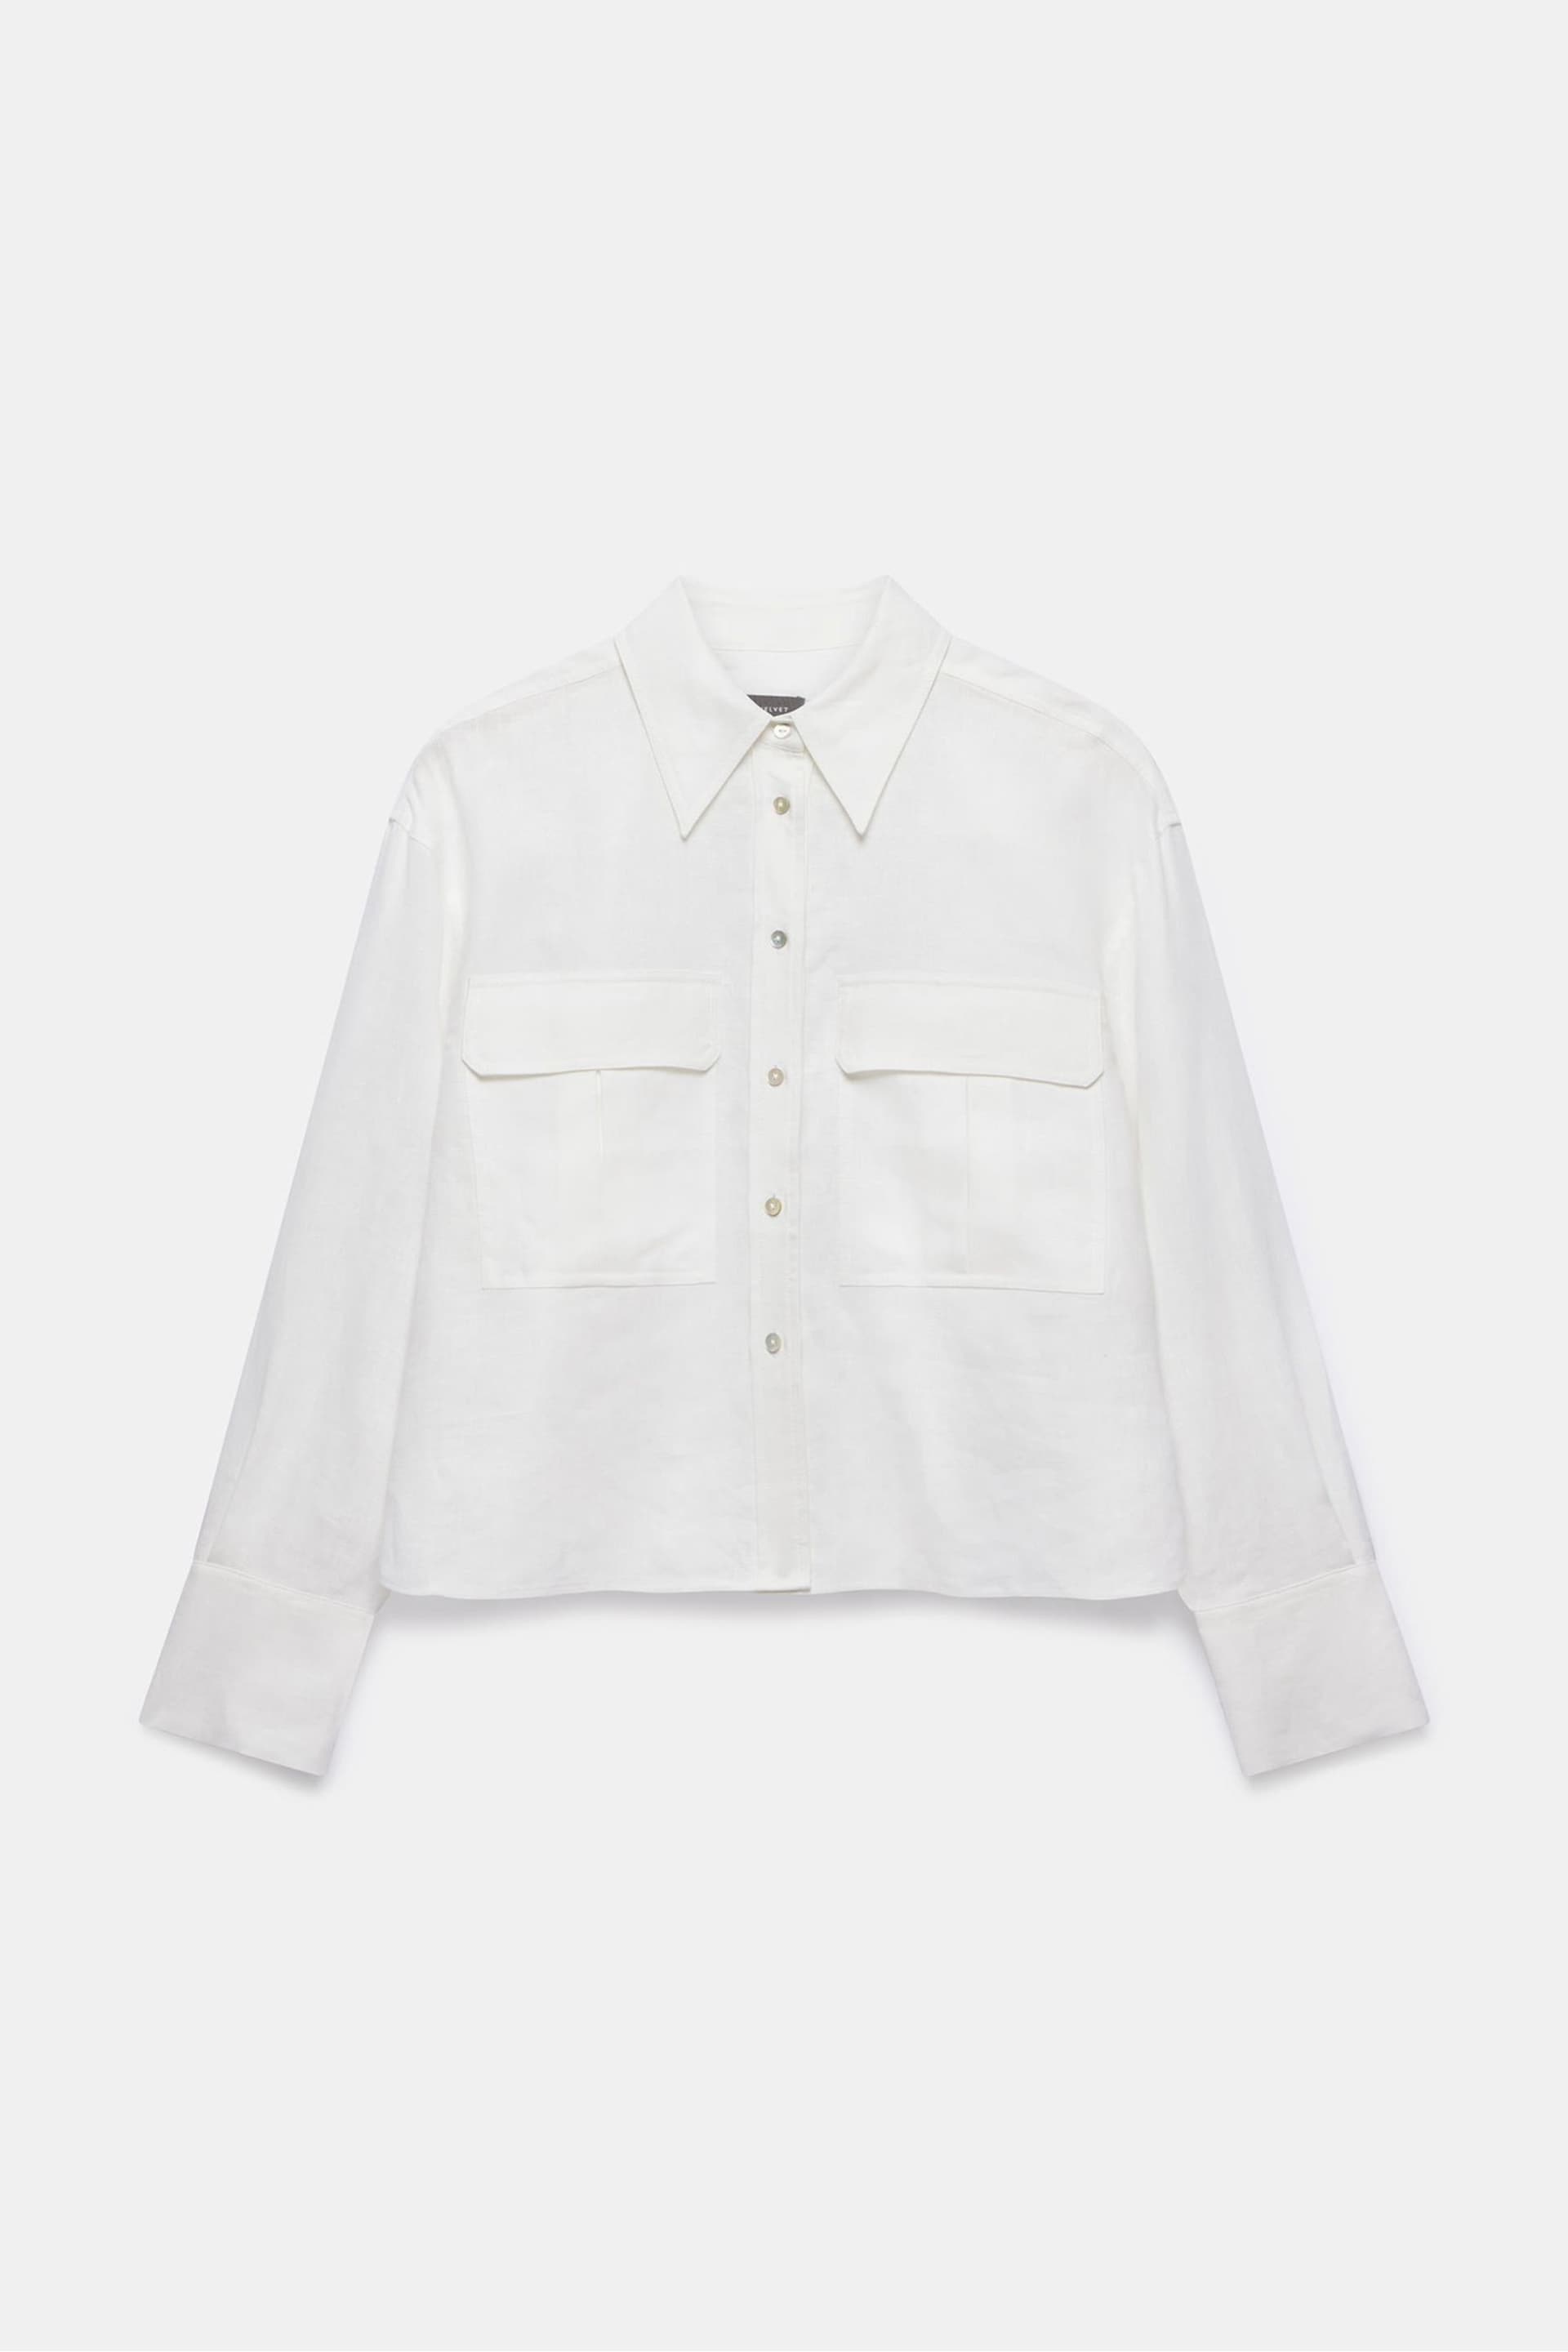 Mint Velvet White Cropped Linen Shirt - Image 3 of 4